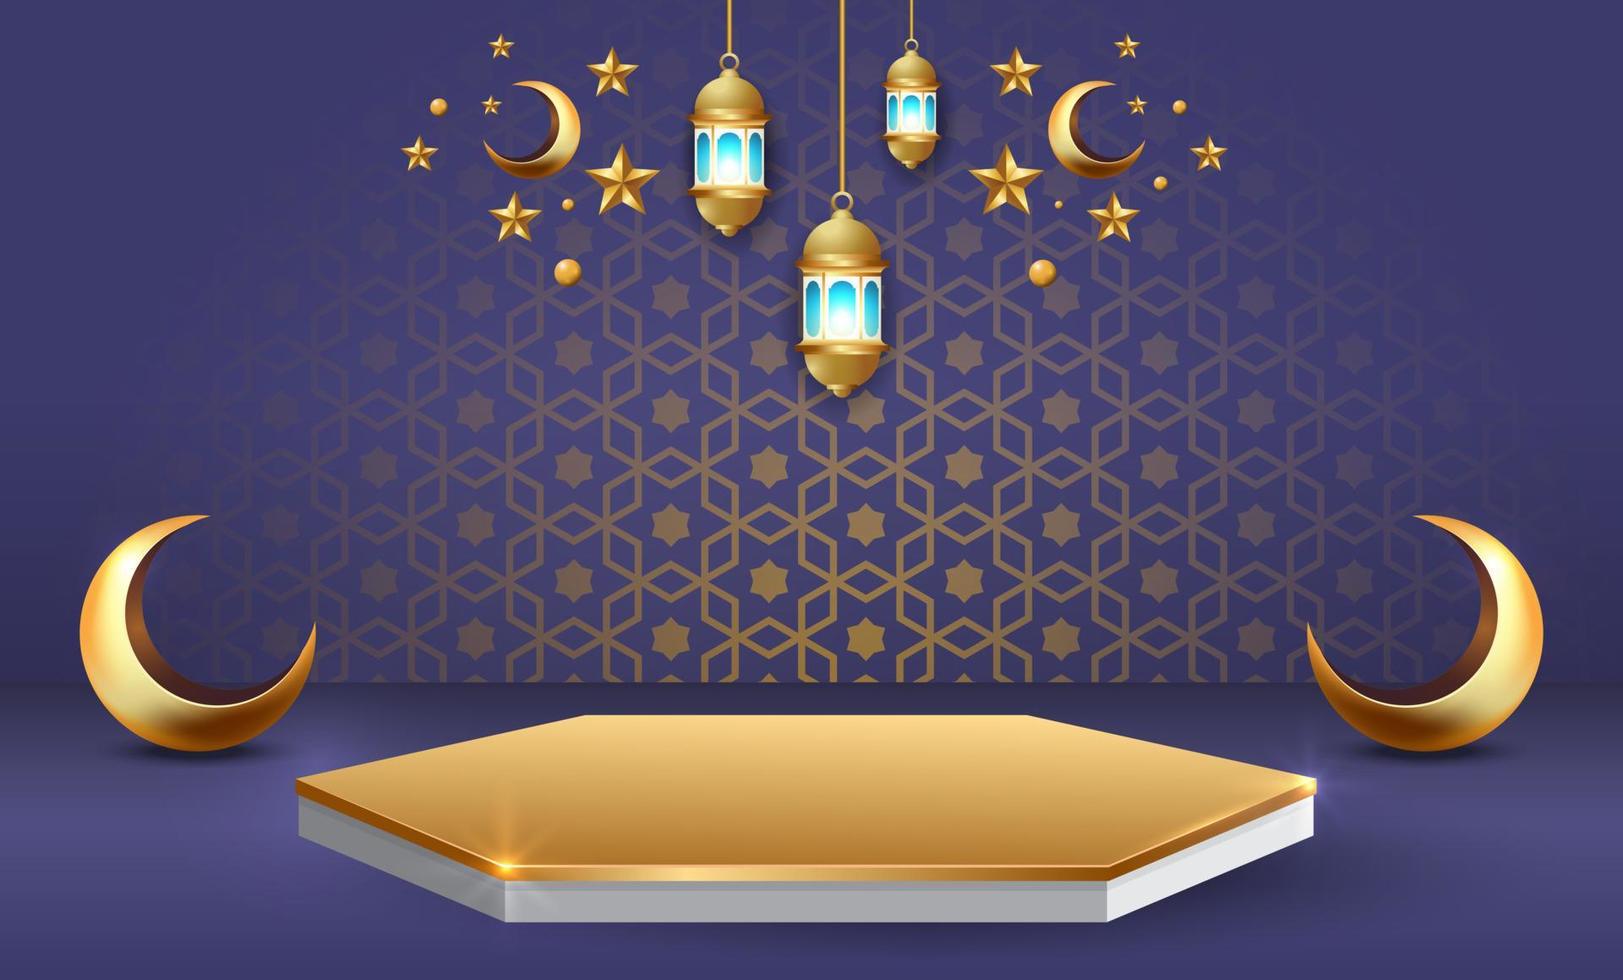 ilustração do projeto do fundo do banner ramadan kareem vetor